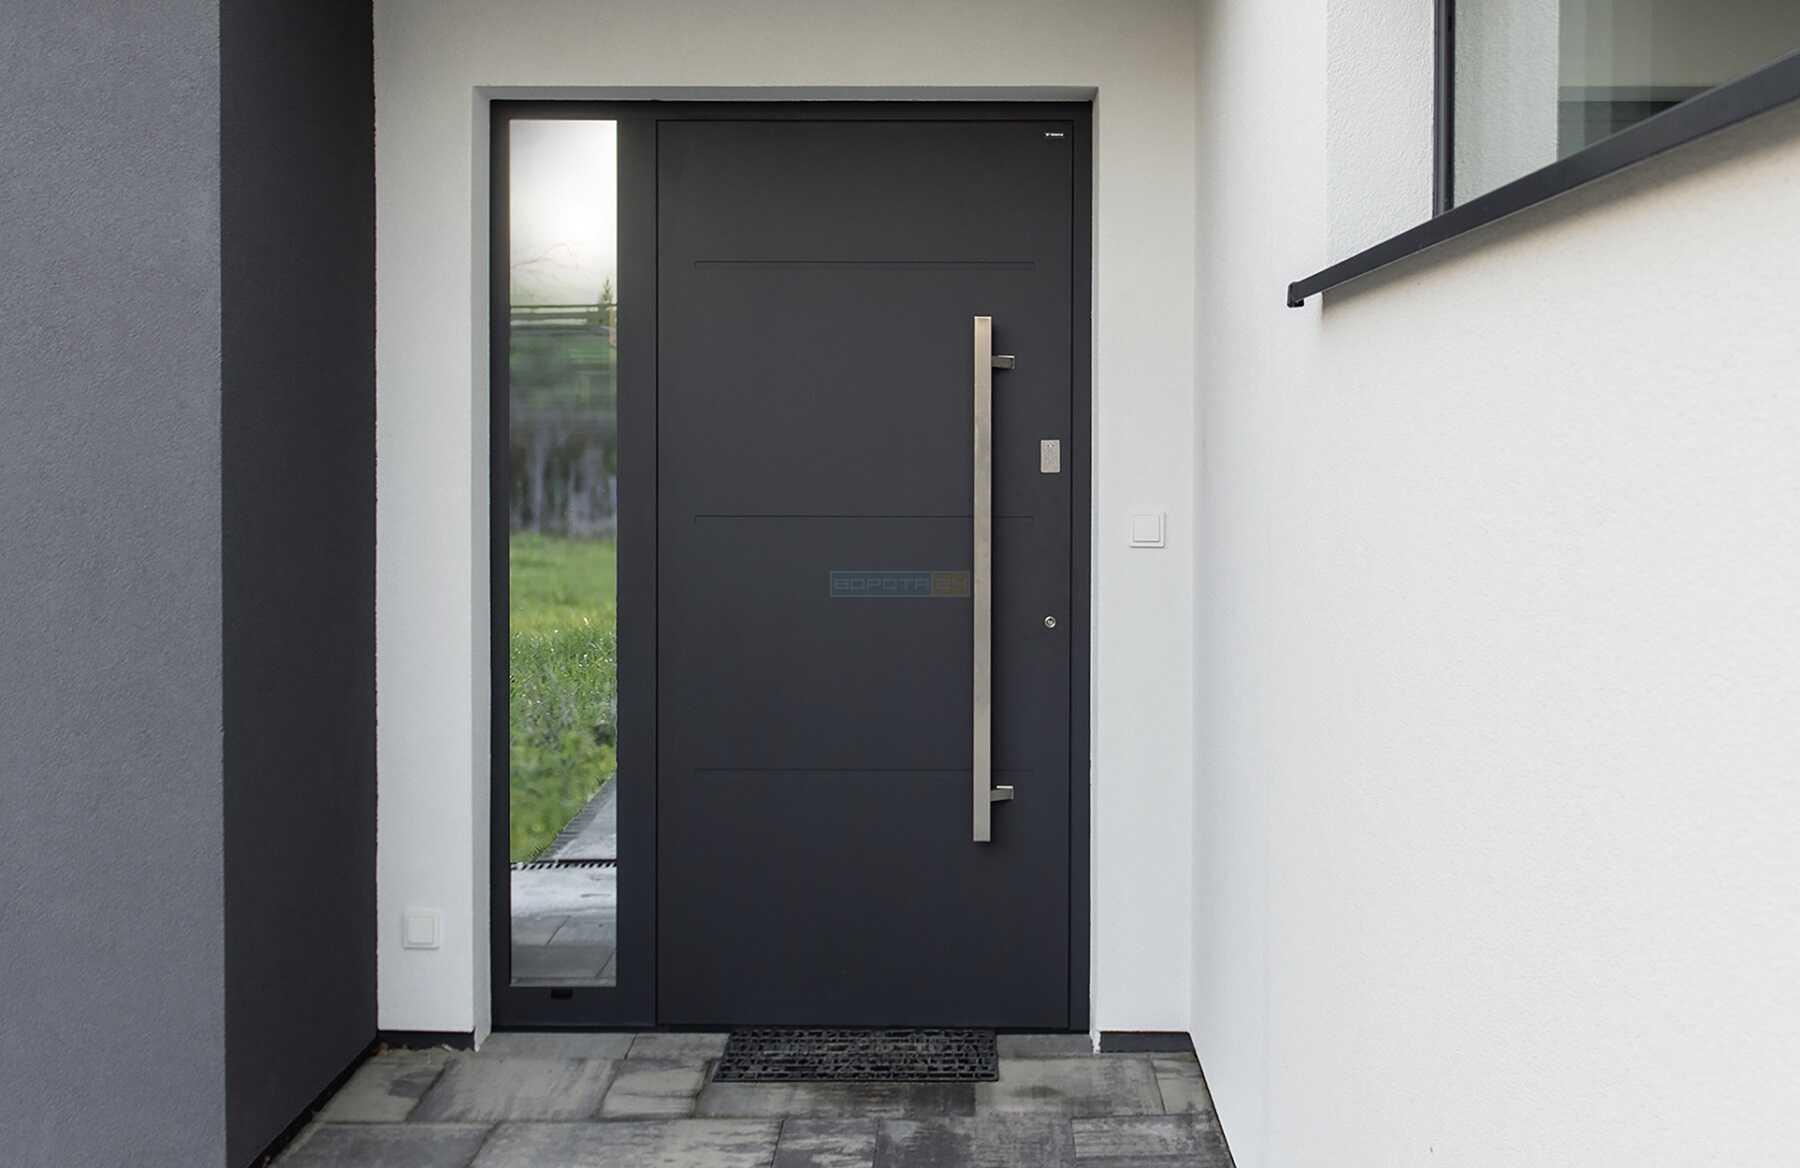 Современные красивые уличные двери в частный дом - европейский производитель RYTERNA, WISNIOWSKI - алюминиевые теплые наружные входные группы с окнами, стеклом